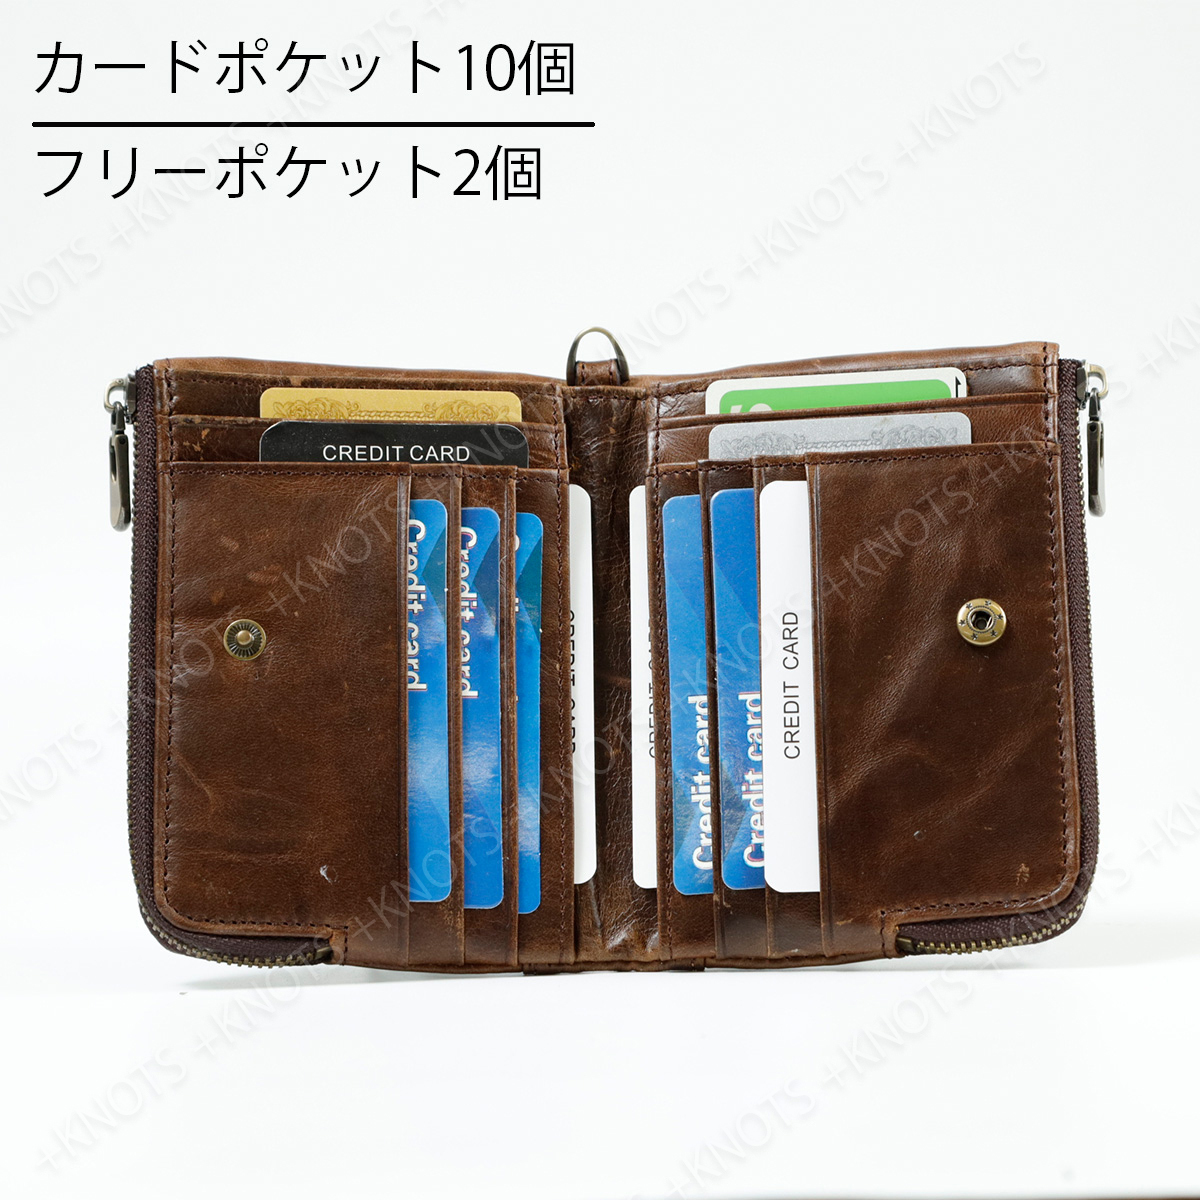 本革 多機能二つ折り財布★ブルー 青★レディース メンズ 小さい財布 大容量 ふたつおり財布 チェーンウォレット